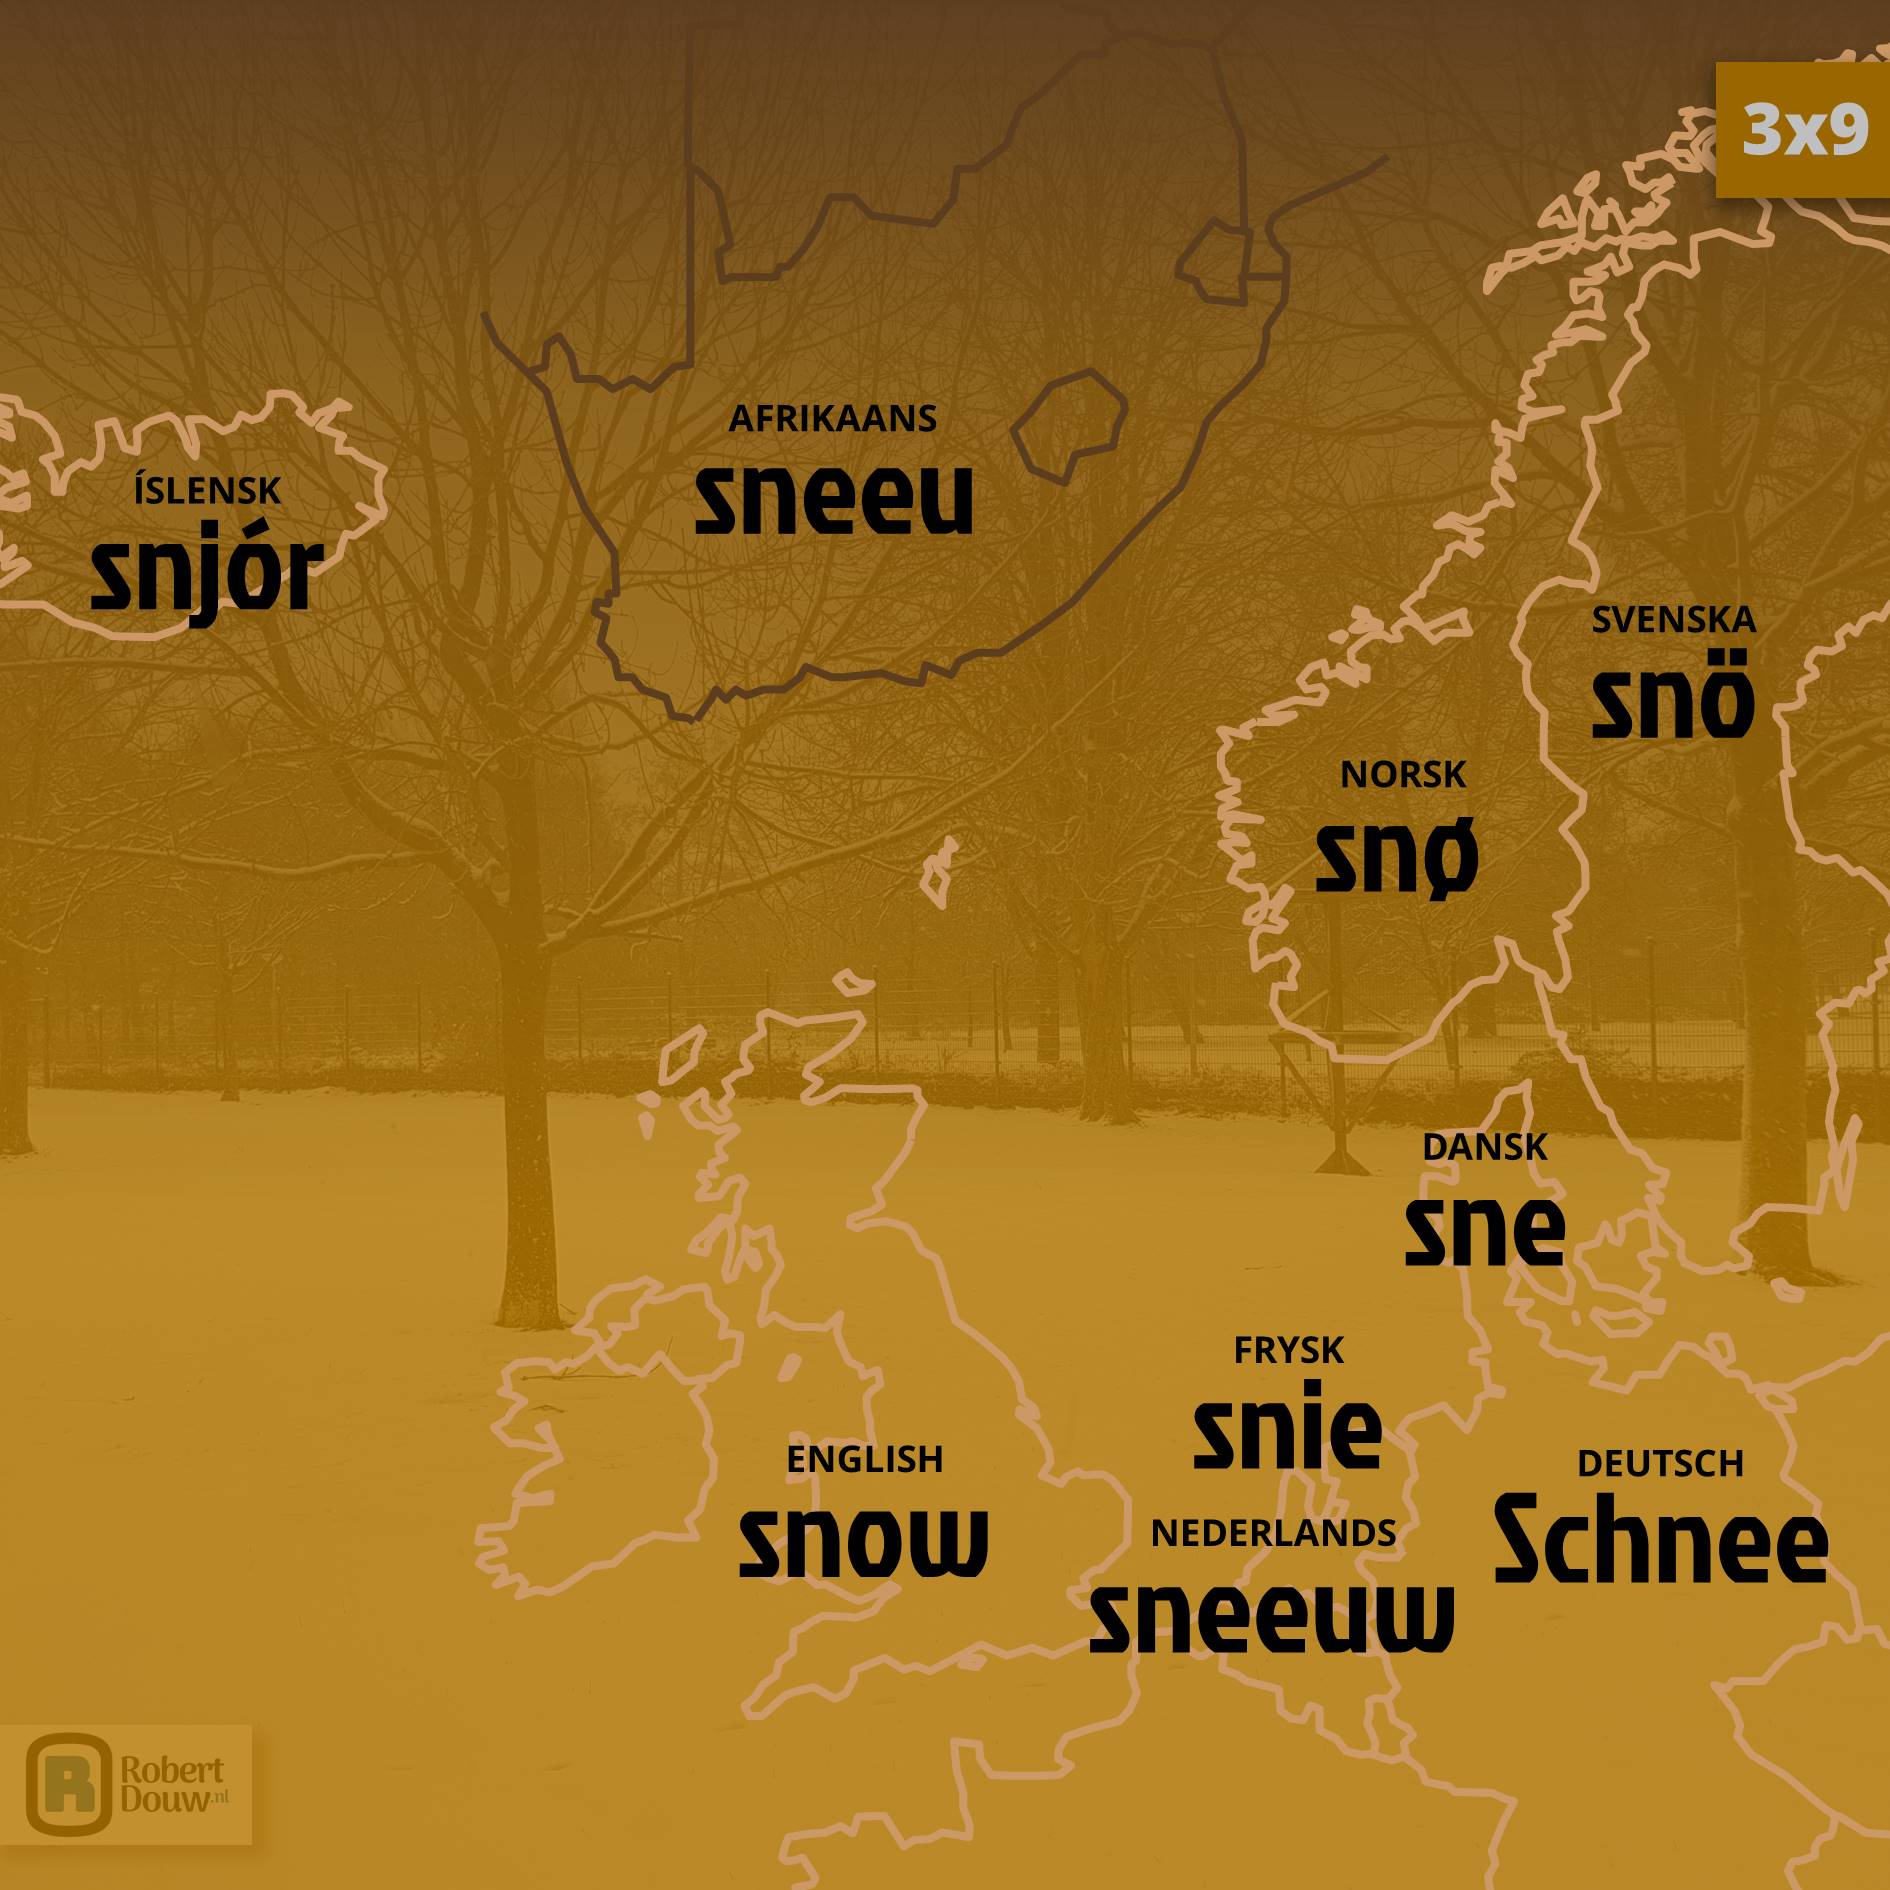 'snow' in nine languages.